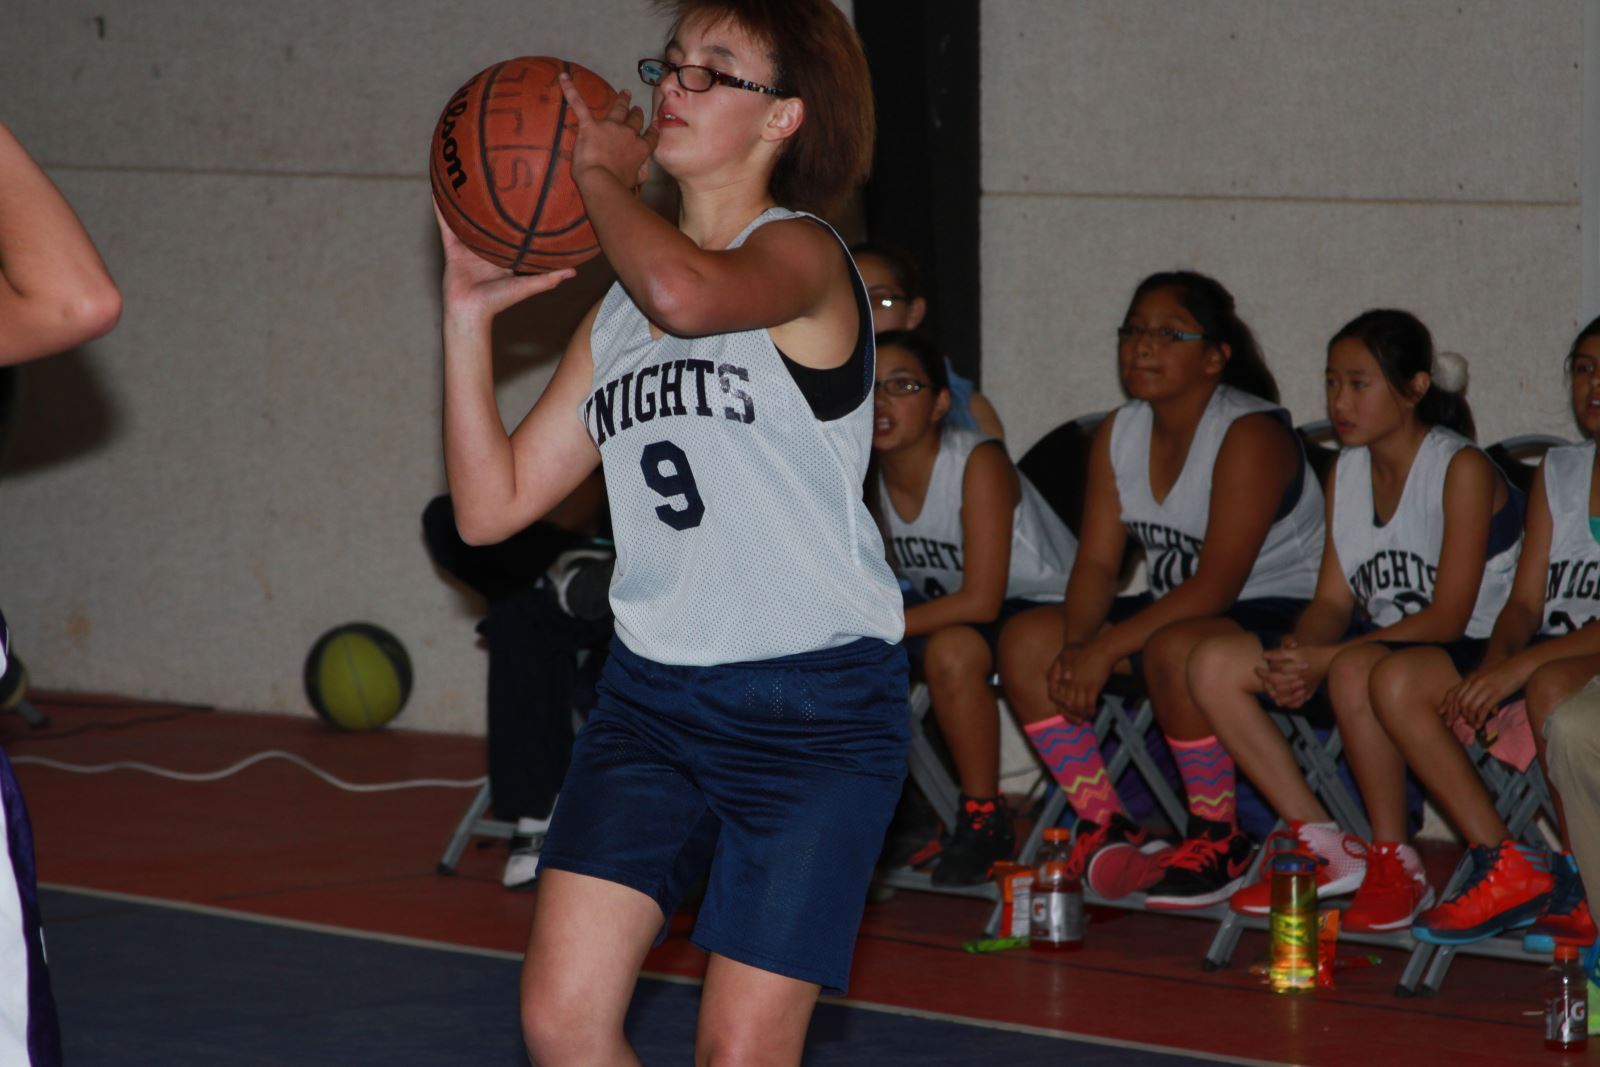 Girl playing basketball